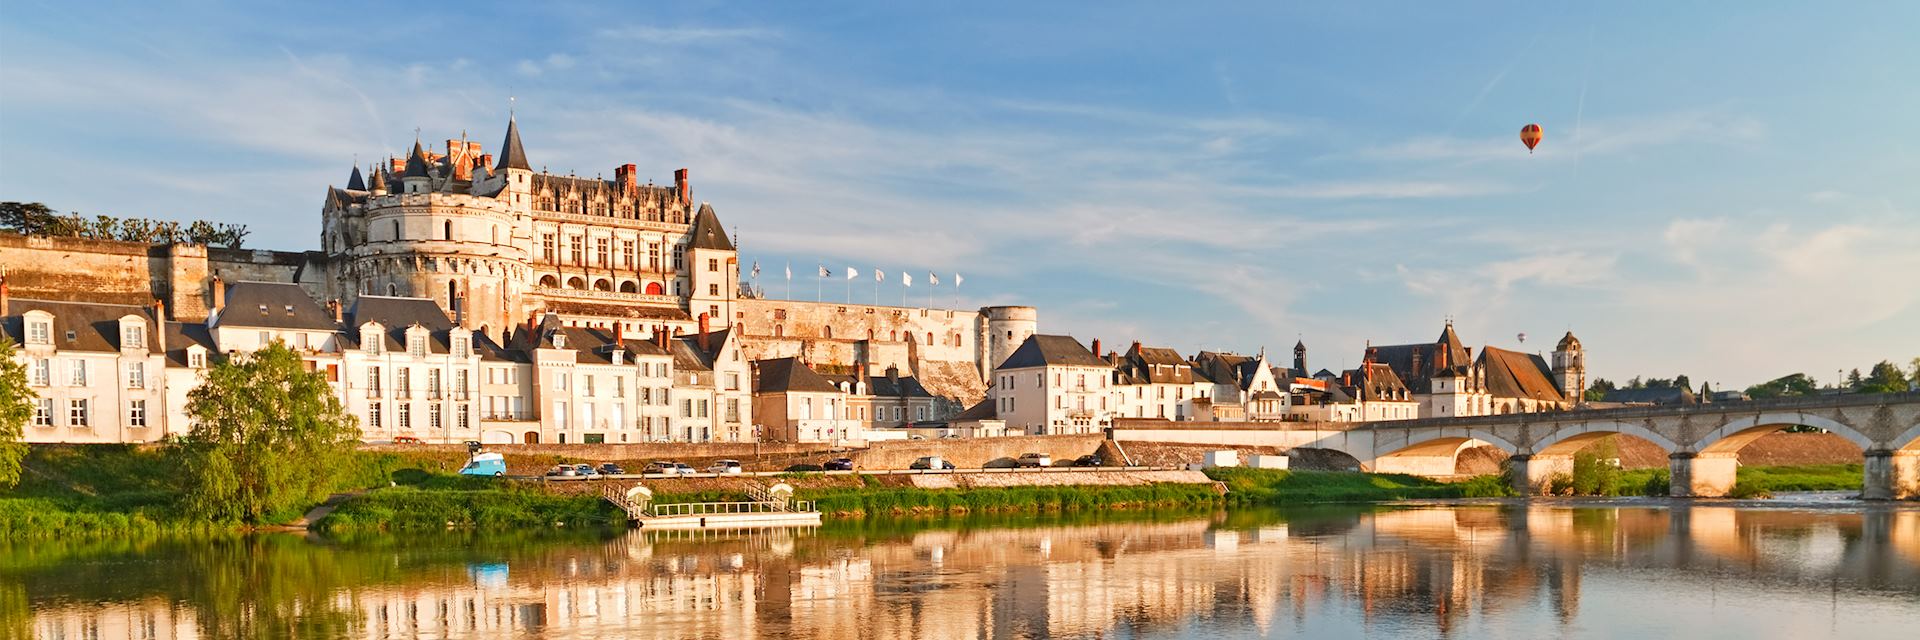 Loire River, Amboise